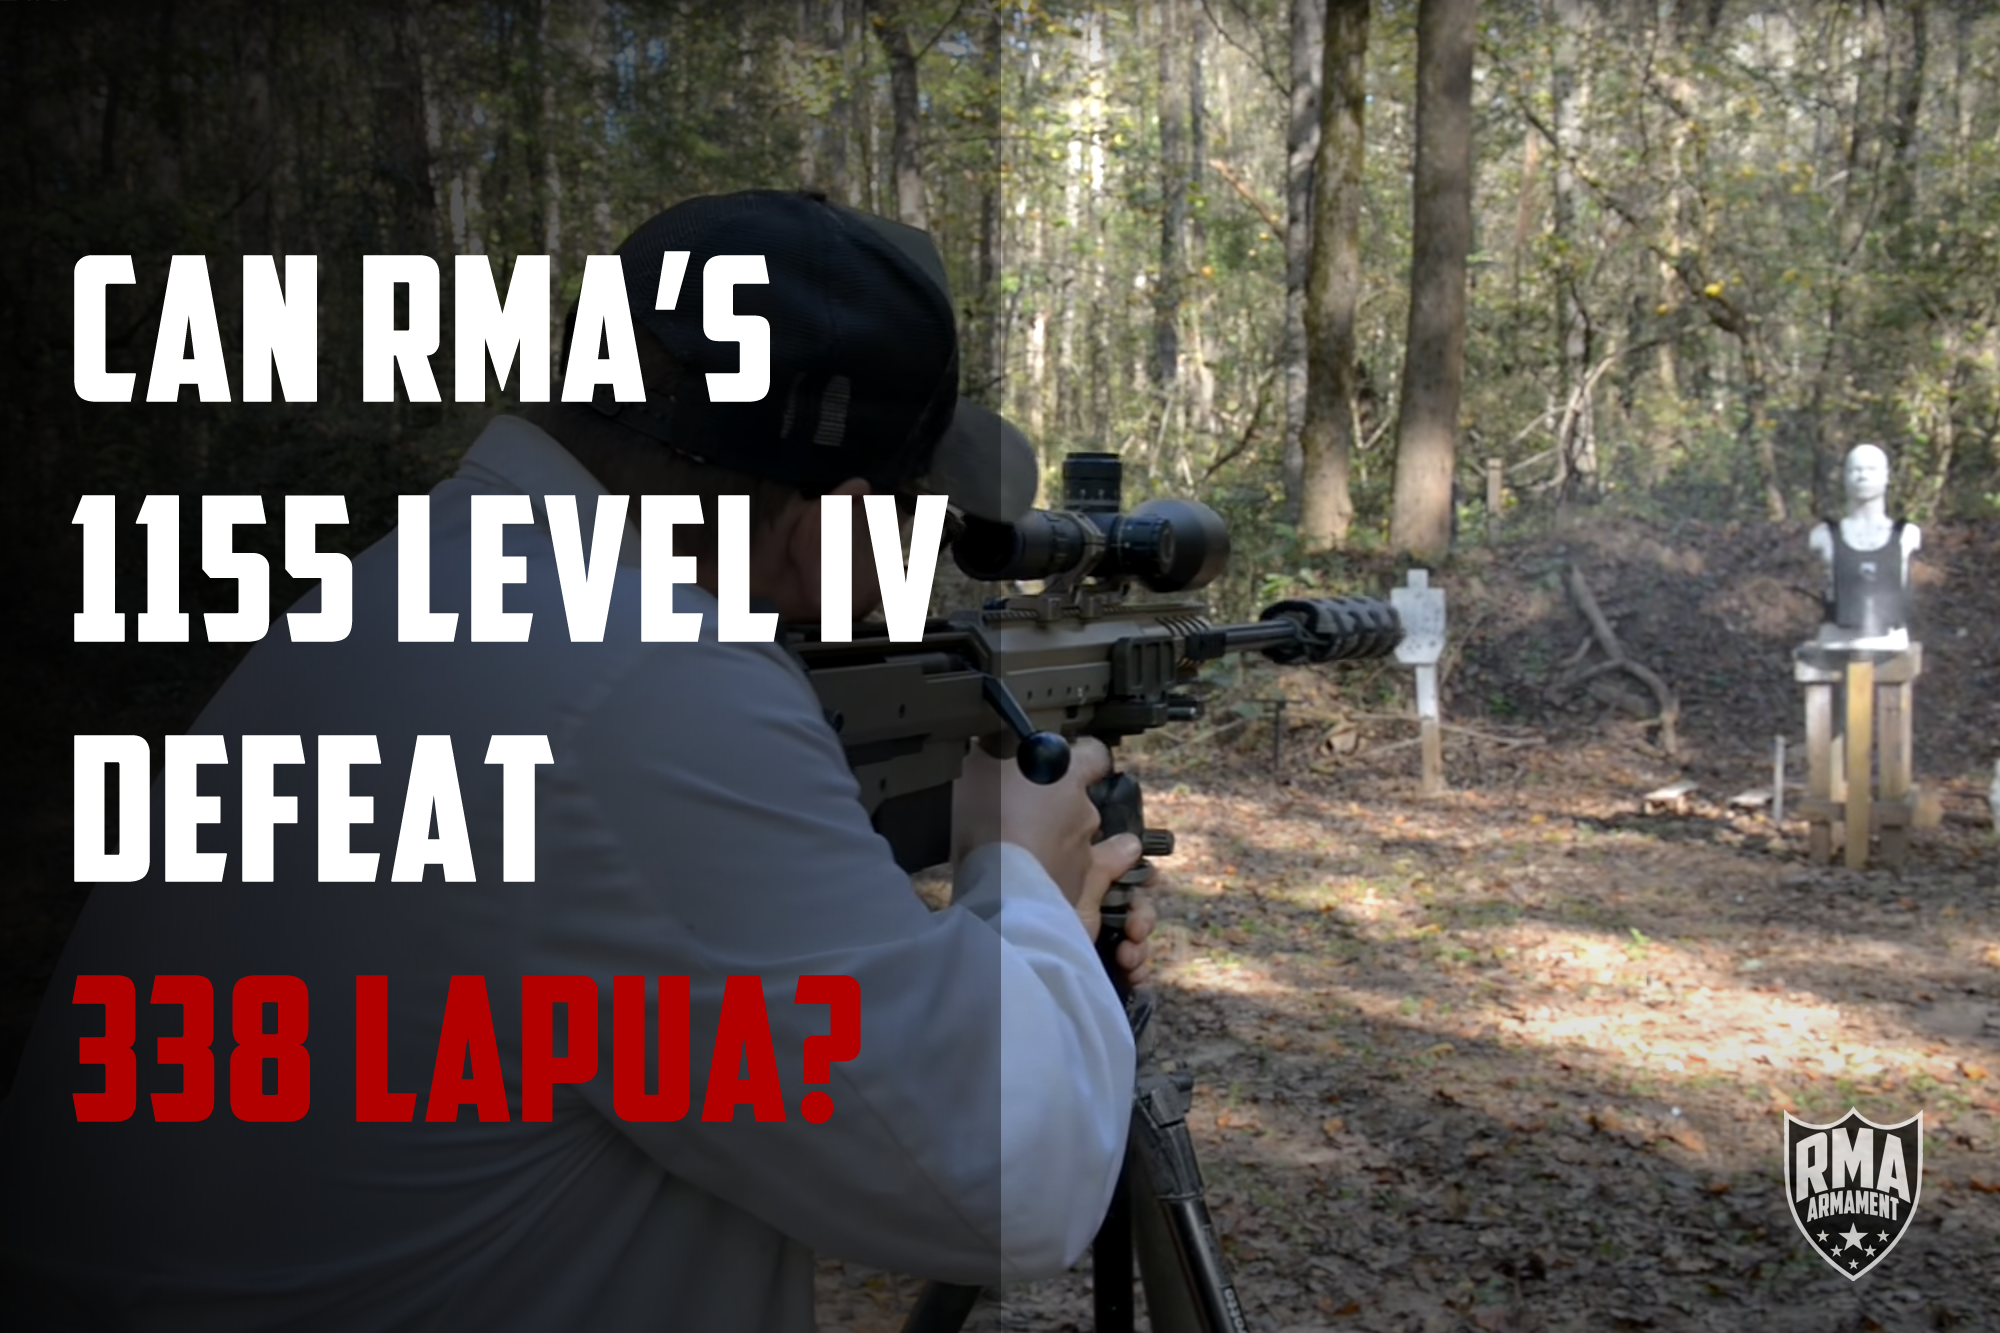 Can RMA's 1155 Level IV Defeat 338 Lapua?